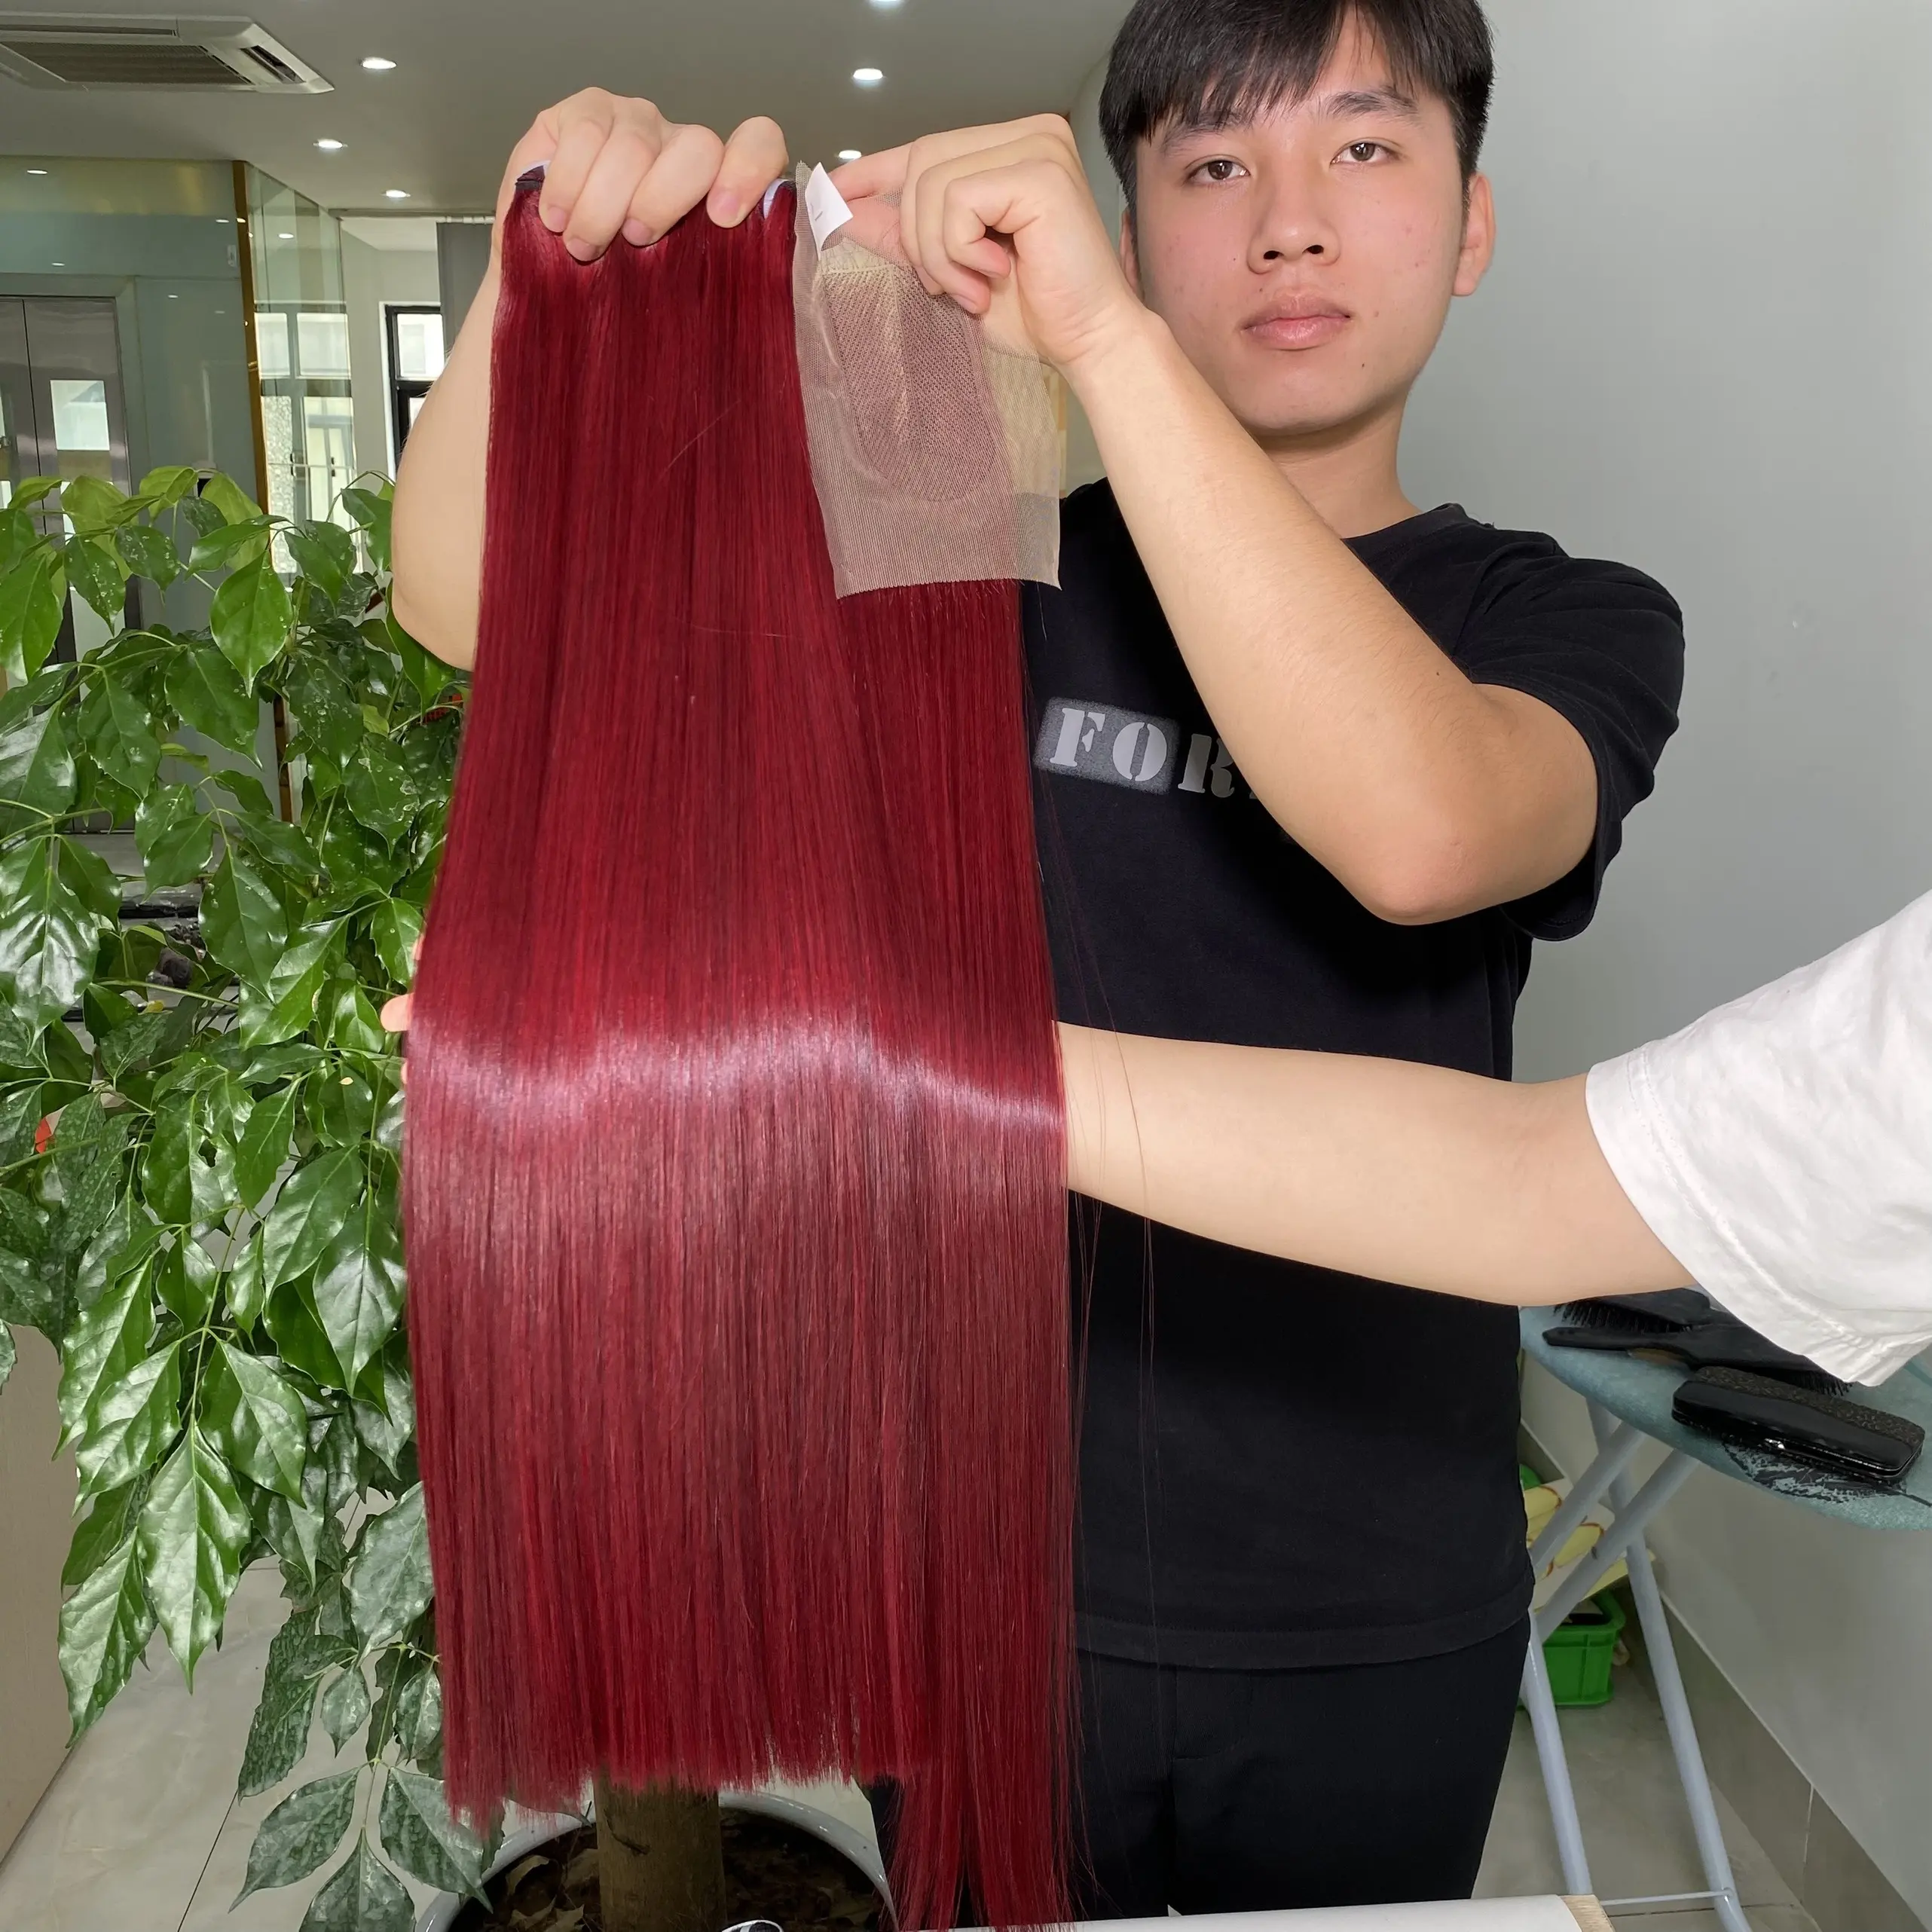 Atkı saç uzatma demetleri satıcı toptan fiyat büyük fabrika Bugendy kırmızı renk doğal saç